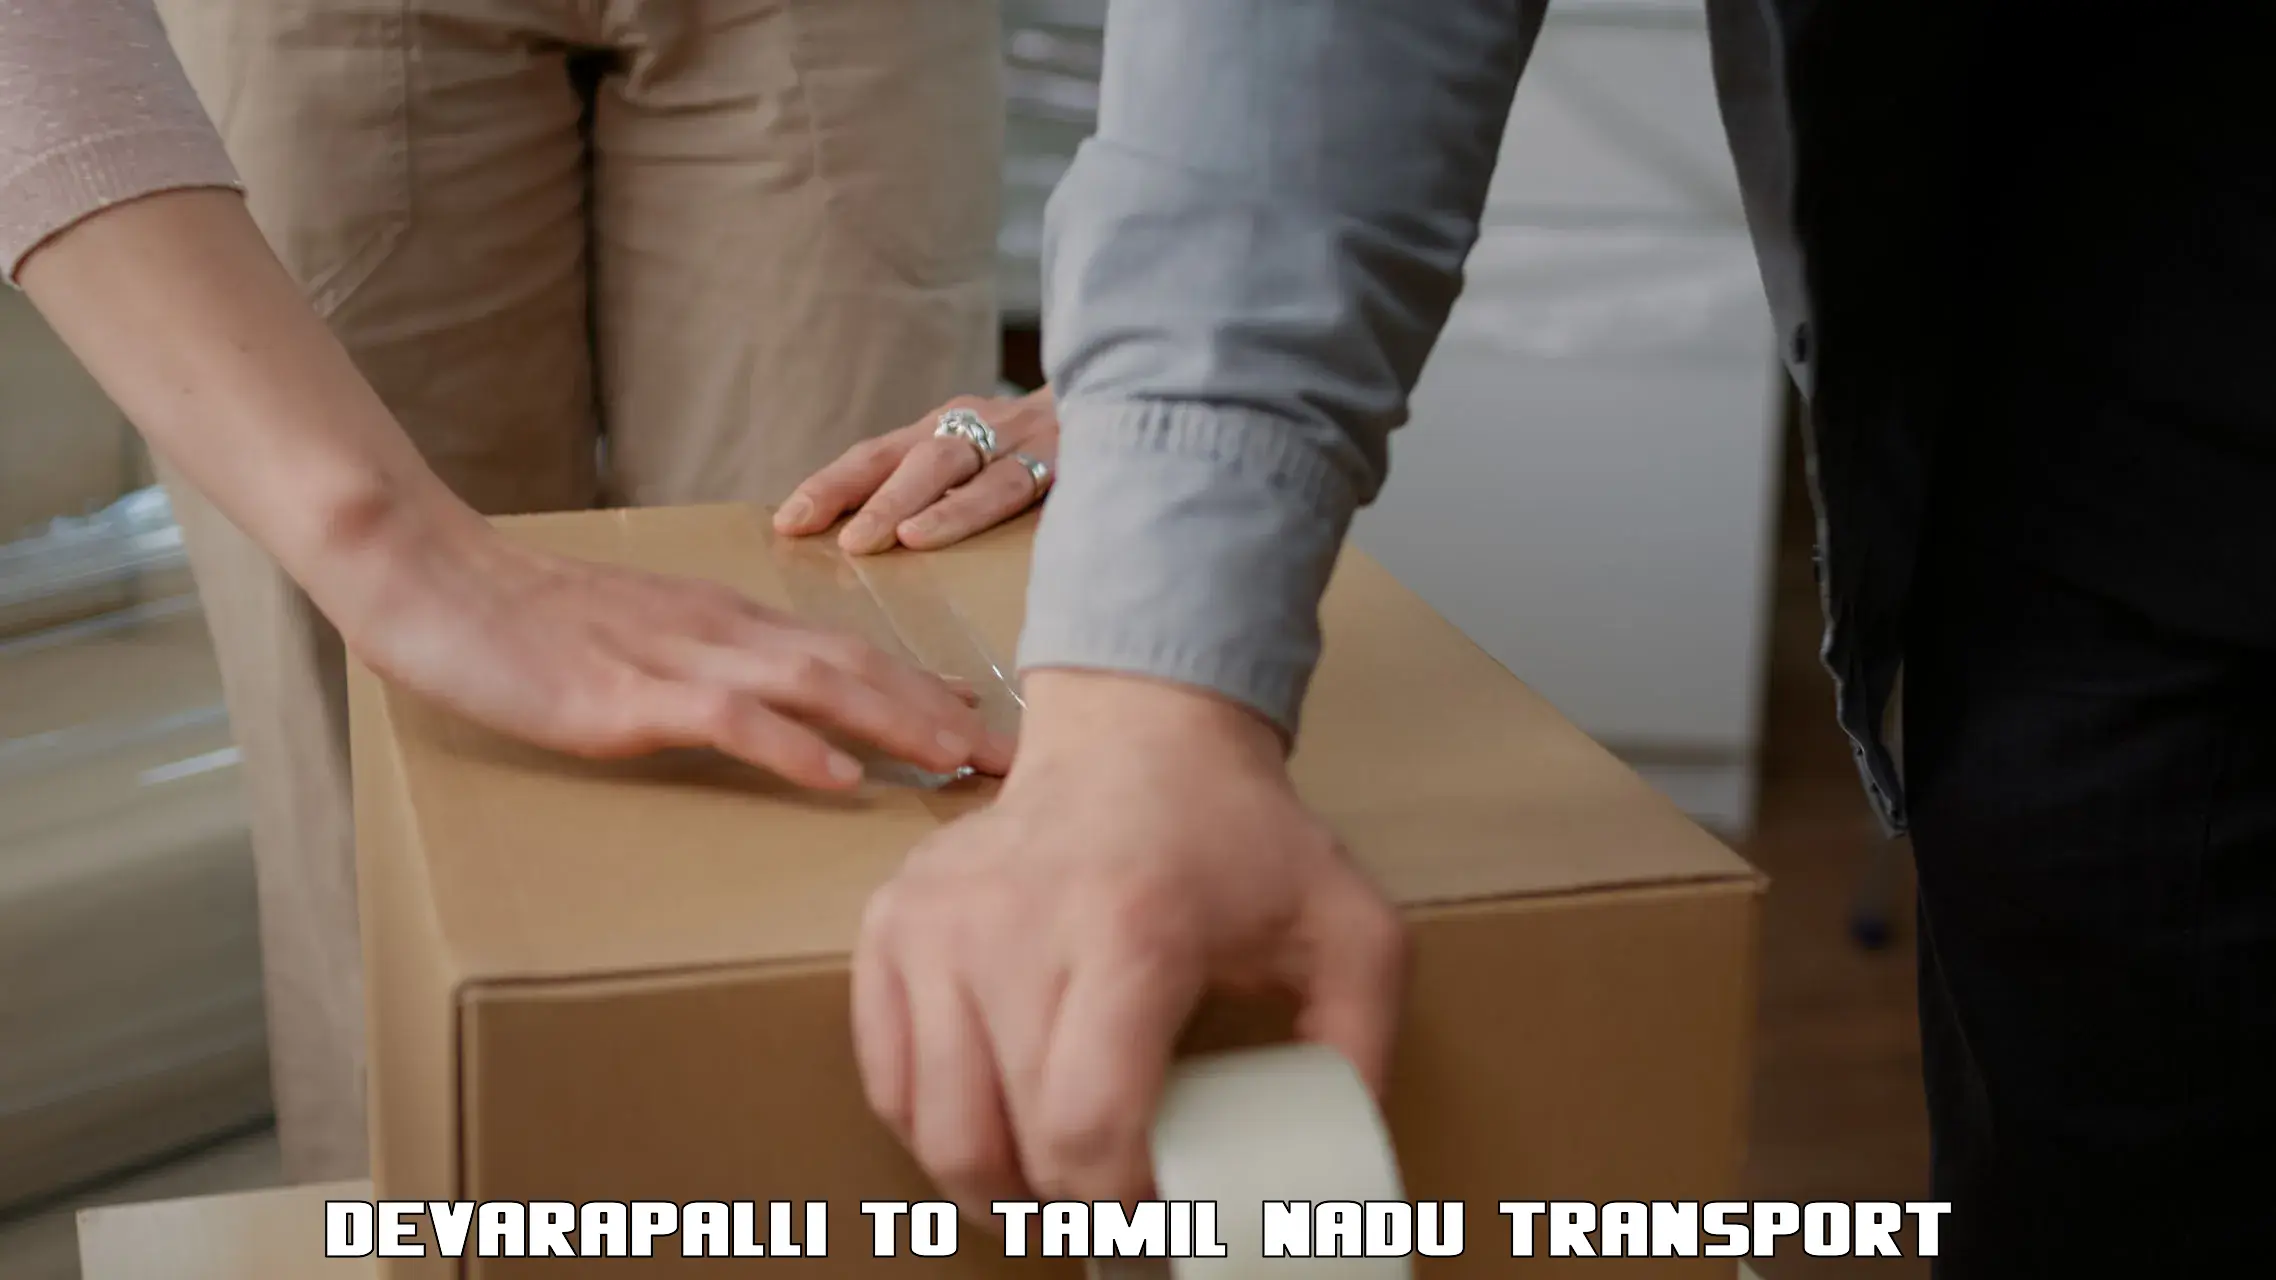 Land transport services Devarapalli to Tiruchirappalli